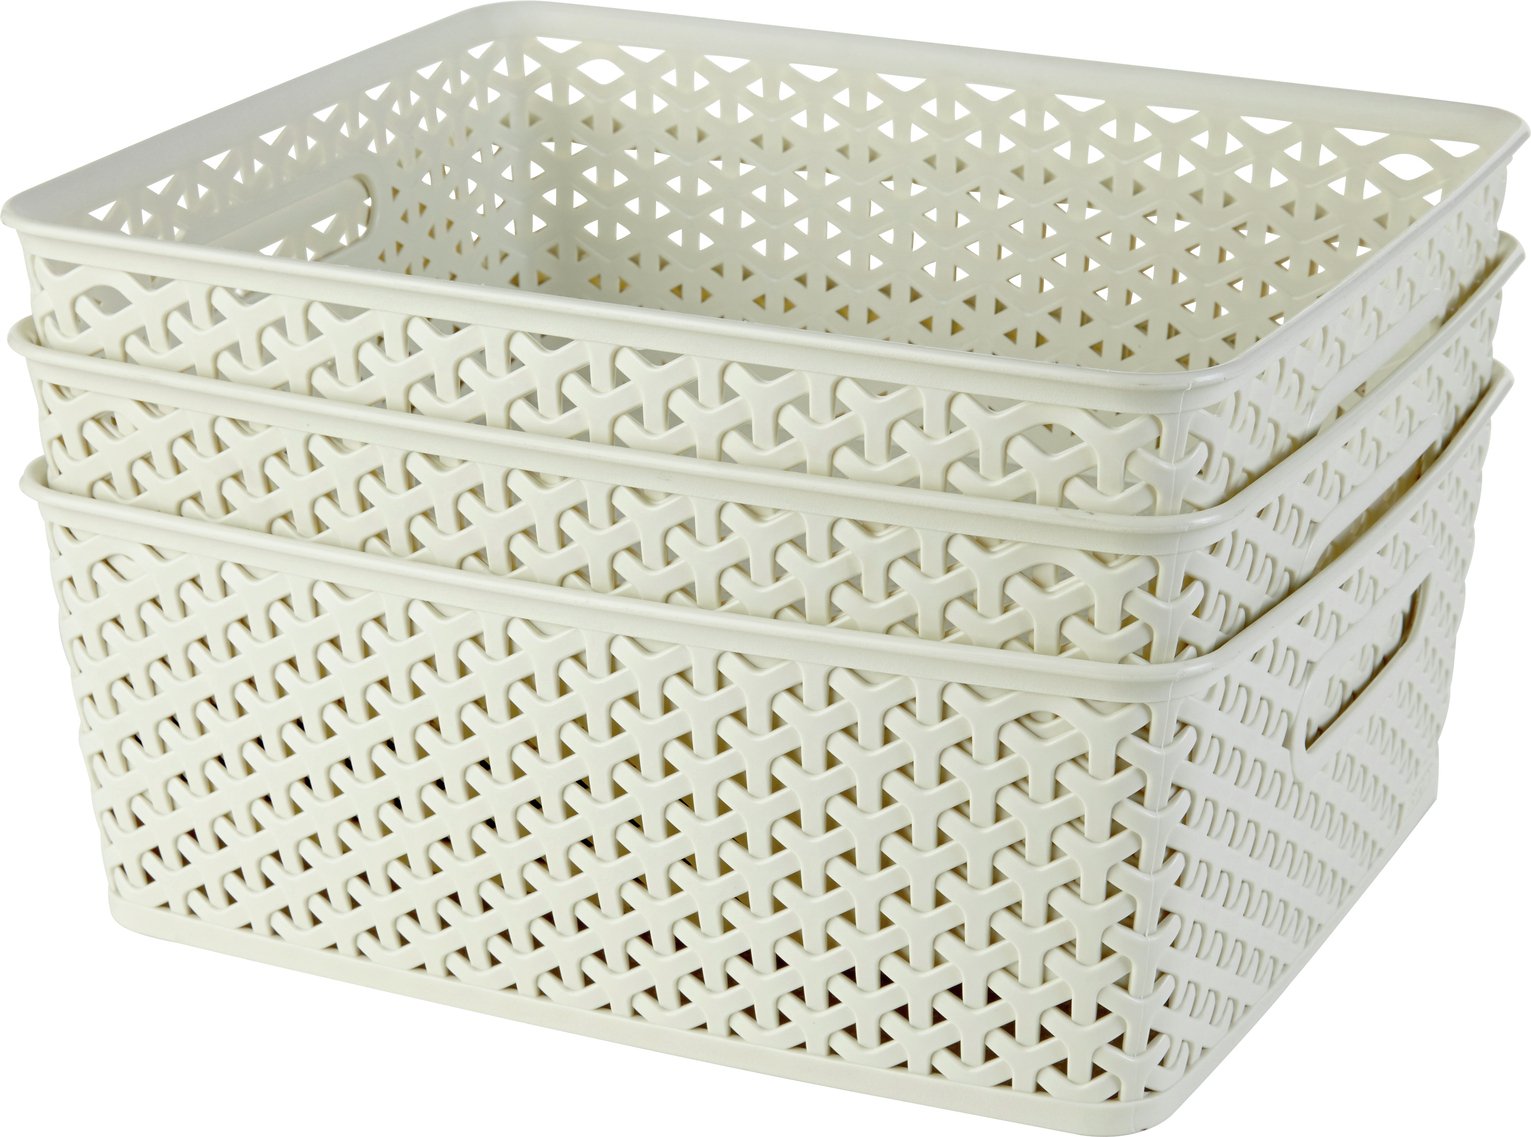 white wicker storage baskets